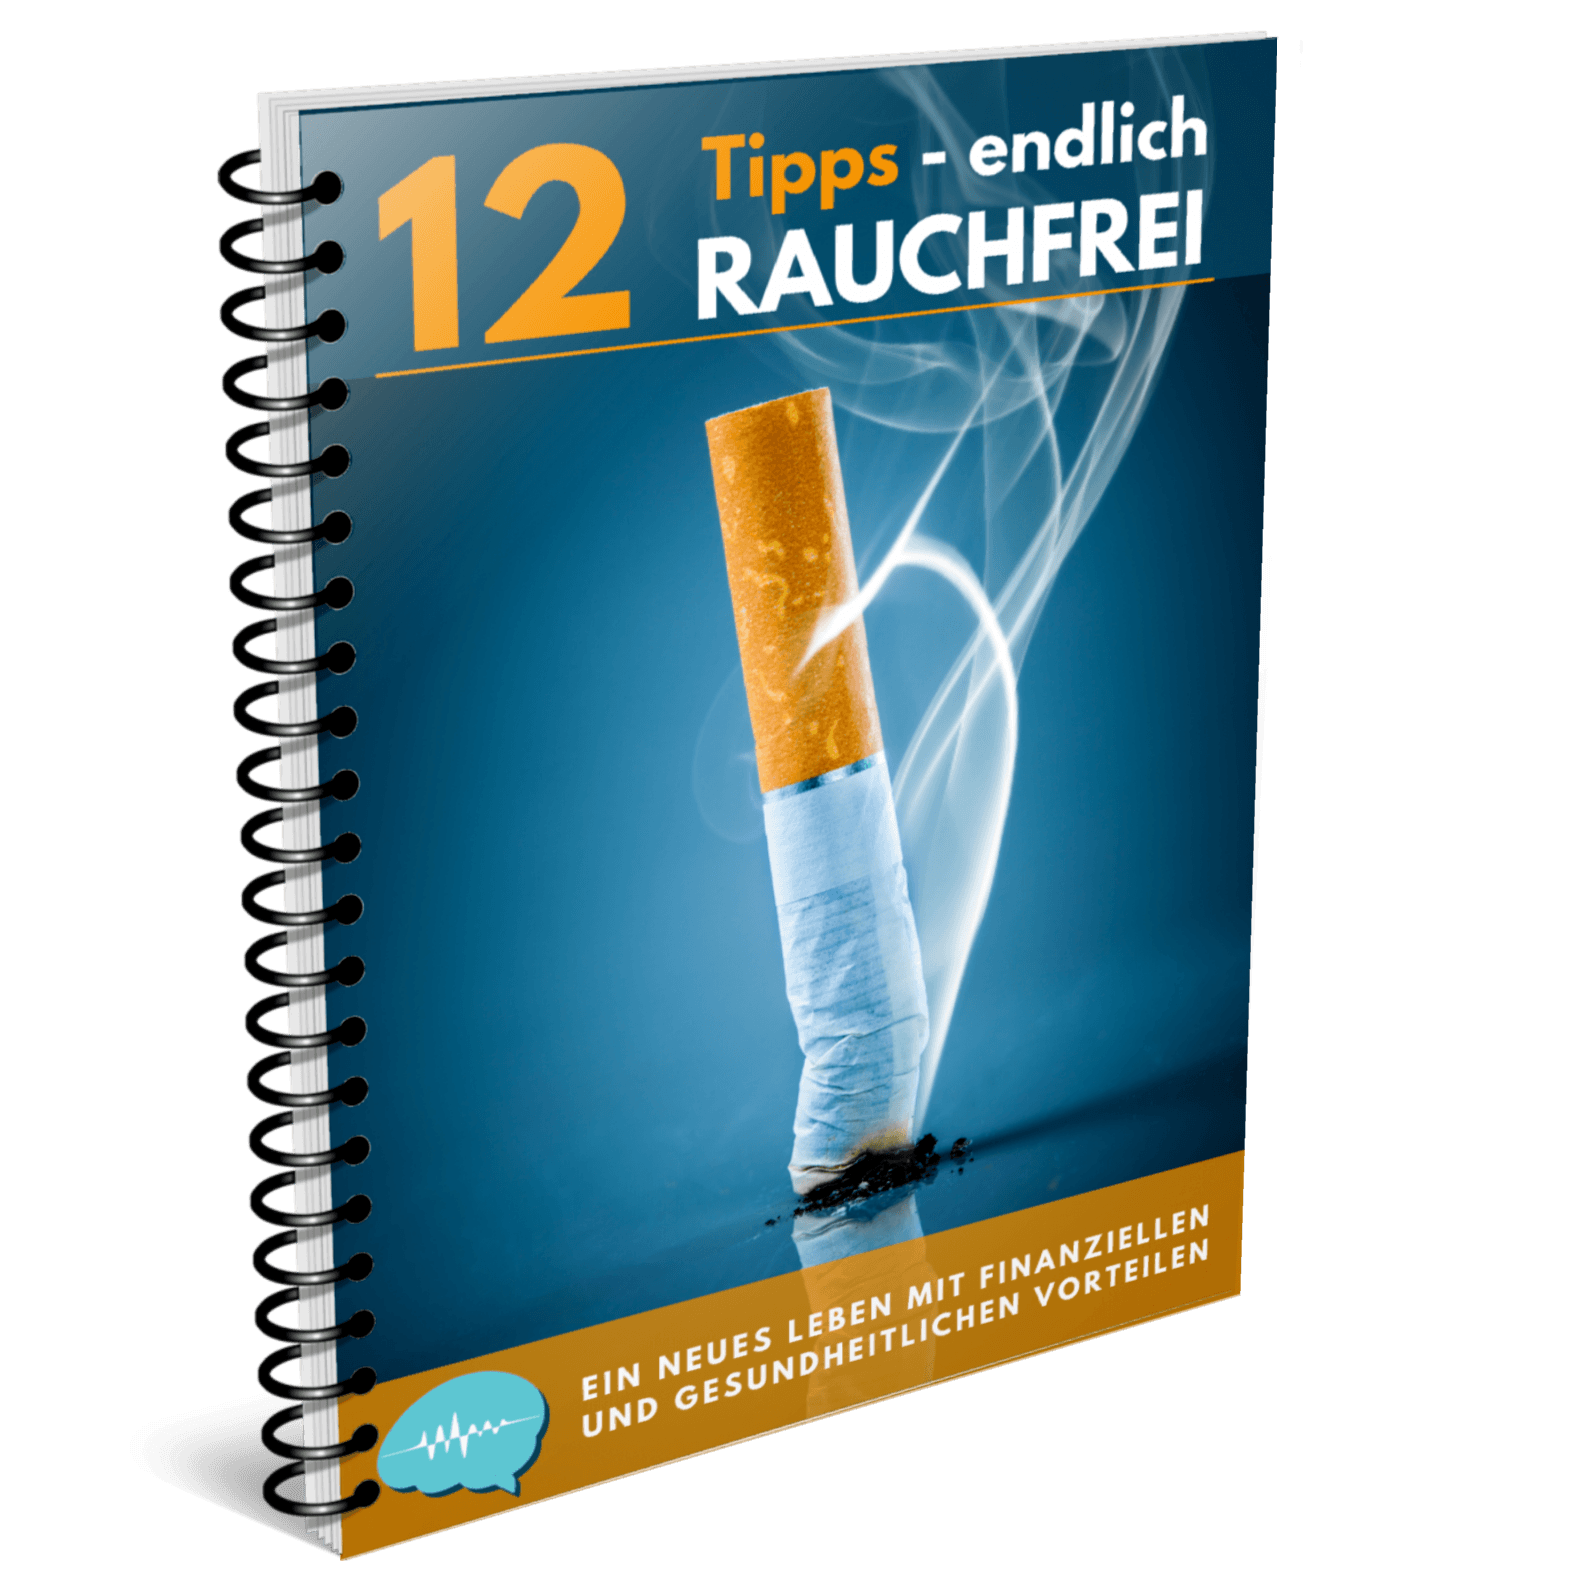 12 Tipps - endlich rauchfrei